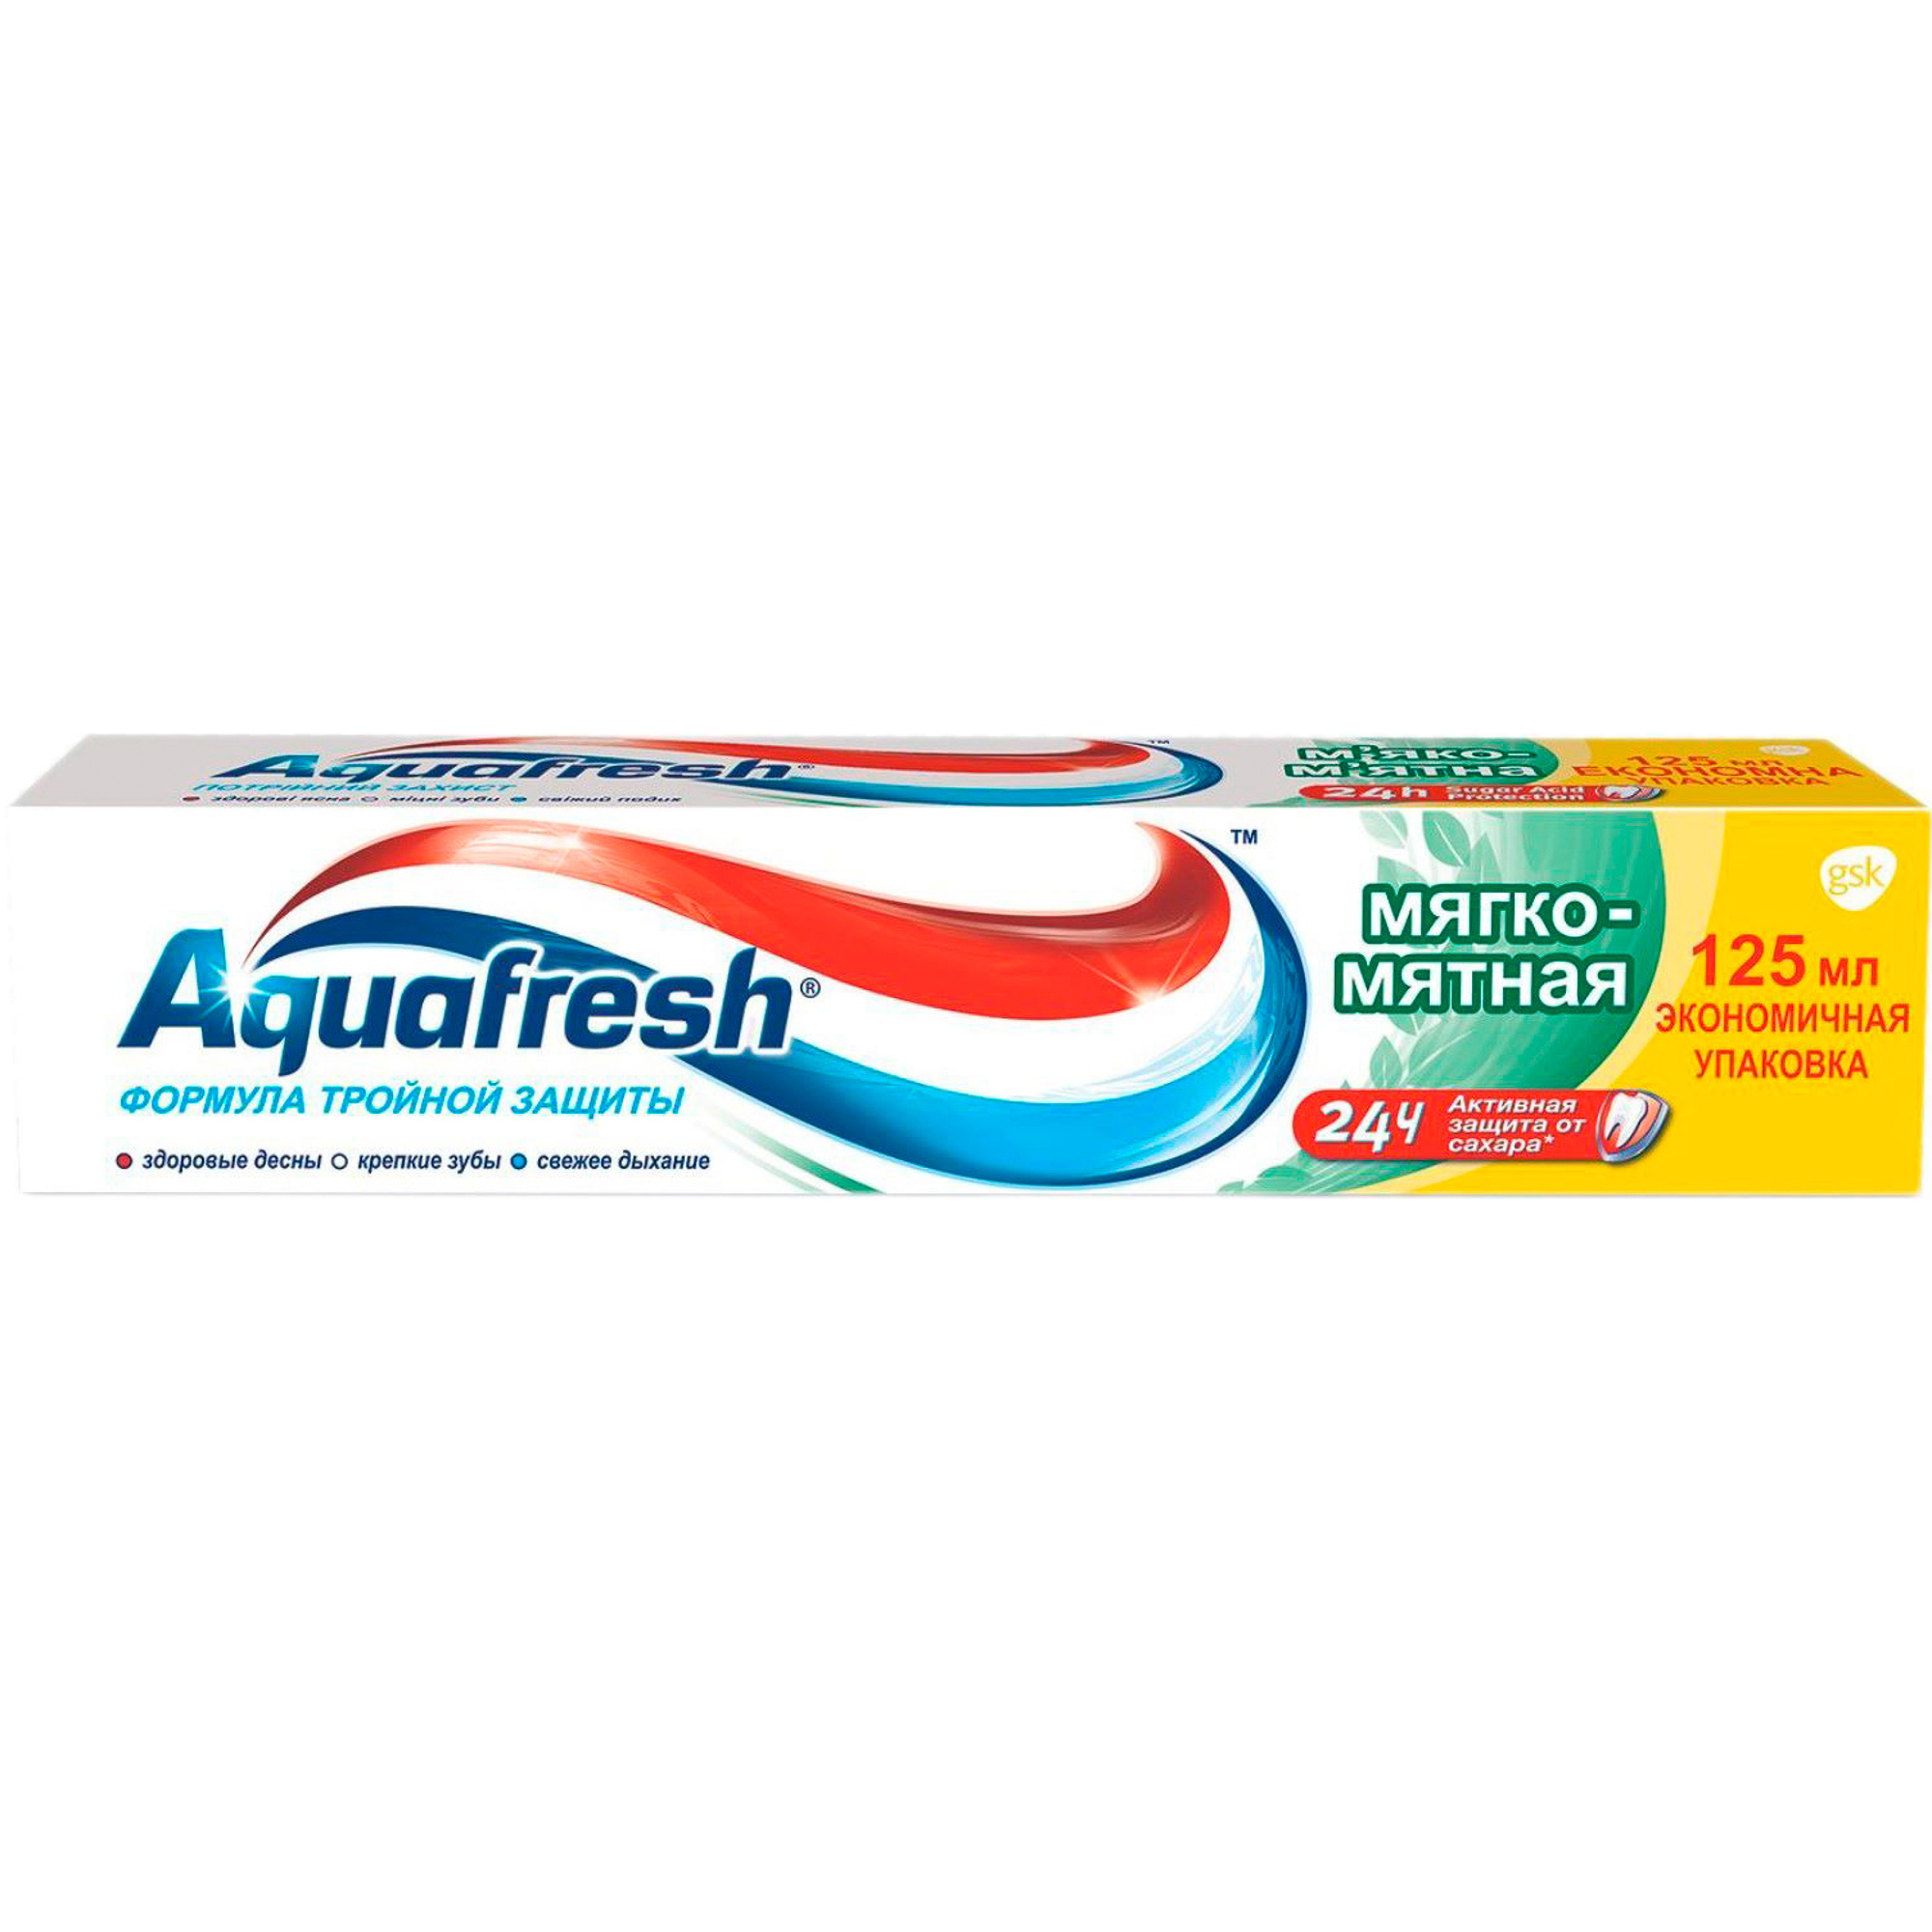 Зубная паста Aquafresh Мягко-мятная 125 мл, размер 21х4х4 см 70177 - фото 1